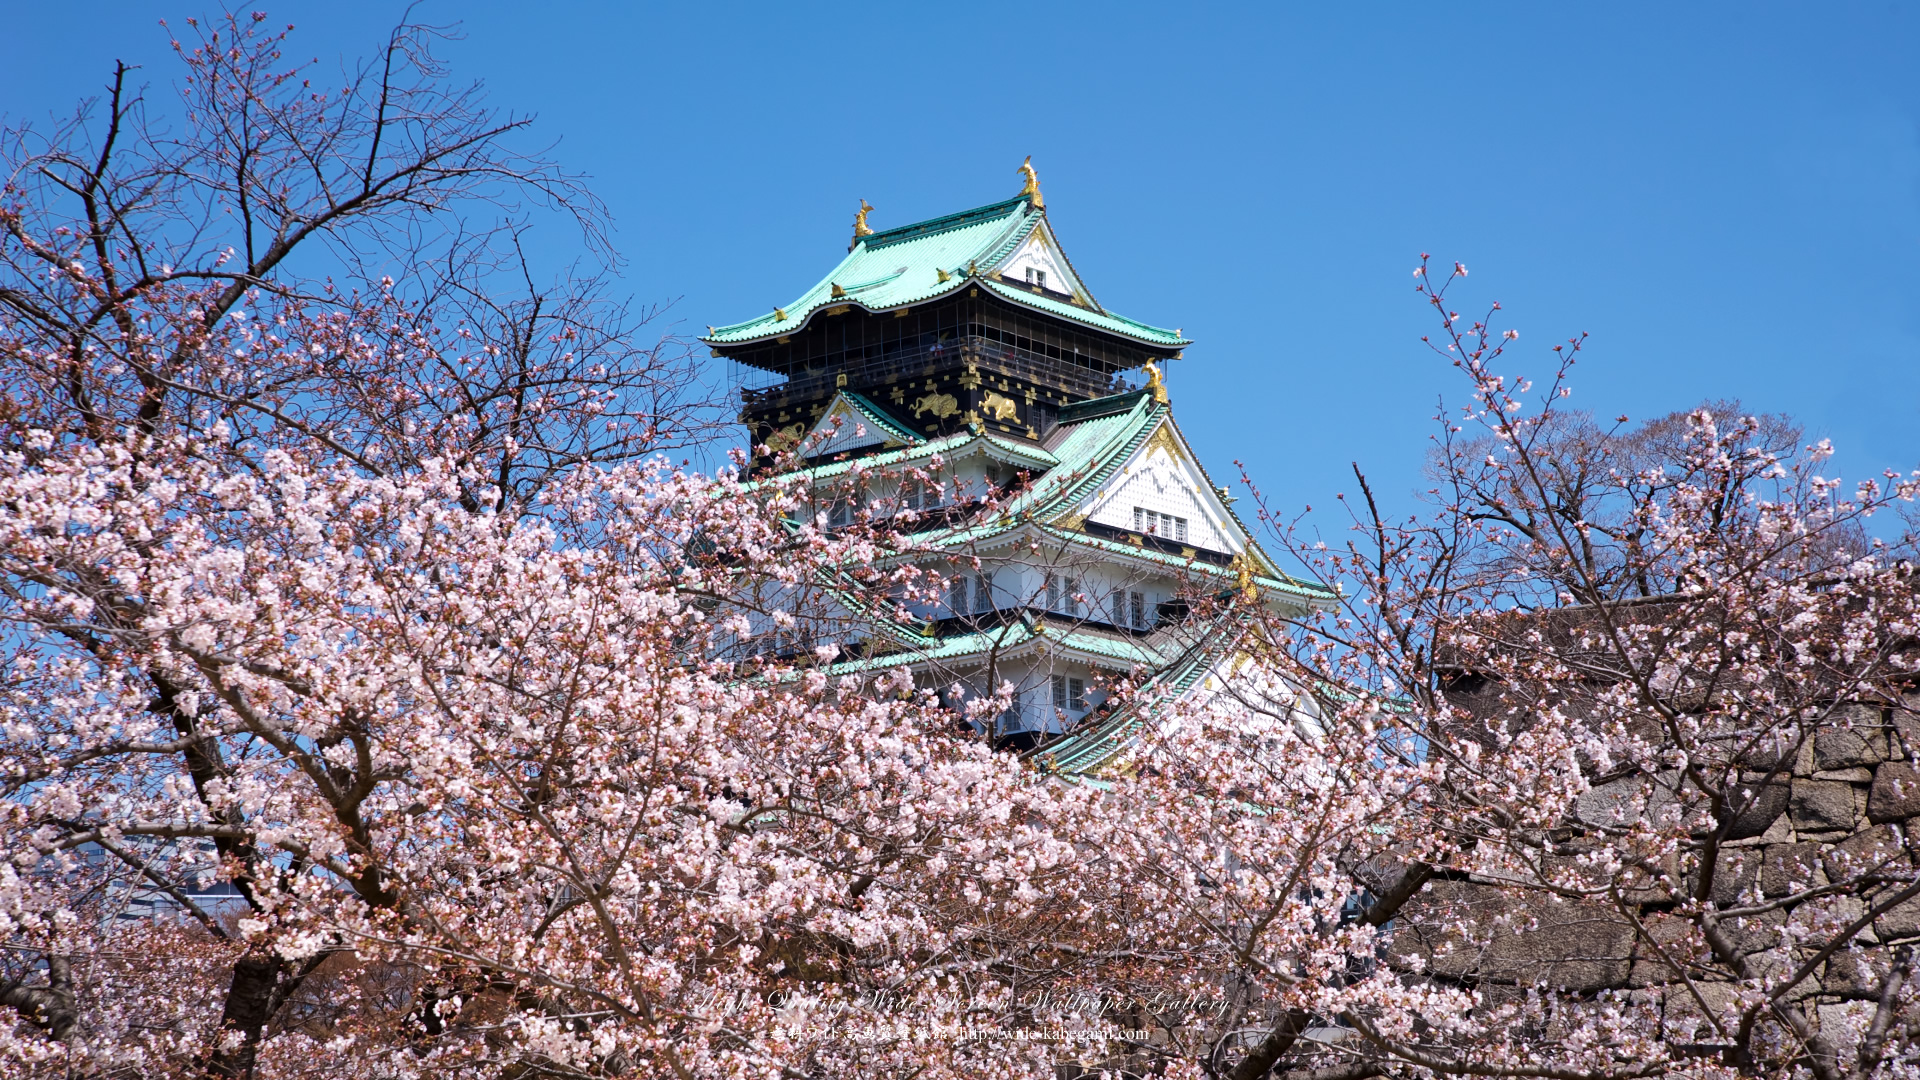 自然風景のワイド壁紙 19x1080 大阪城と桜 4 無料ワイド高画質壁紙館